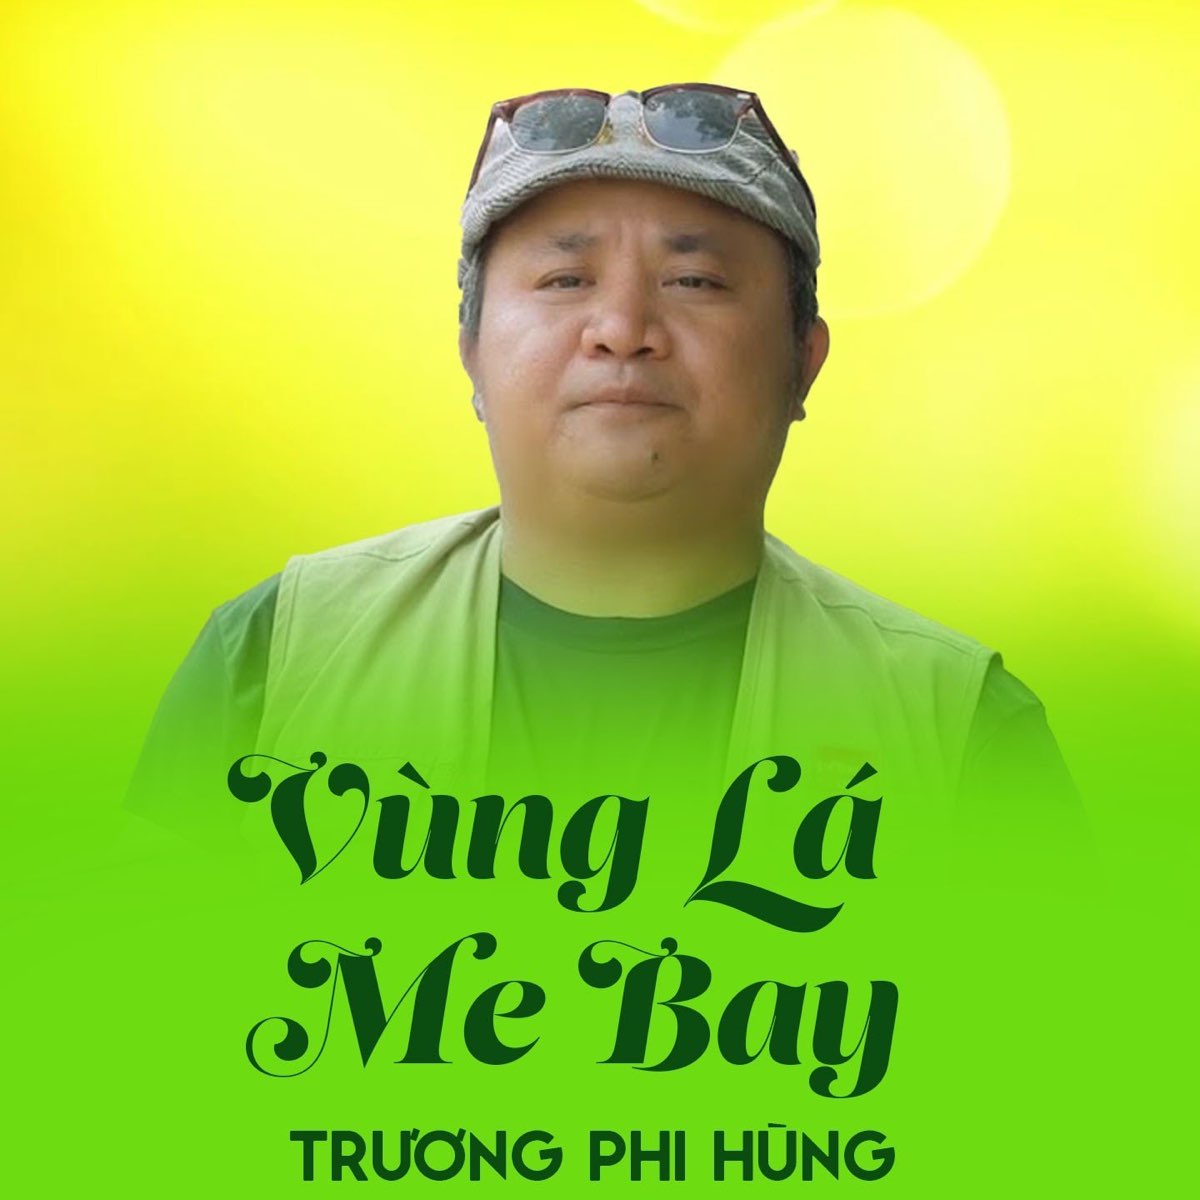 Vùng Lá Me Bay - Single - Album by Truong Phi Hung - Apple Music